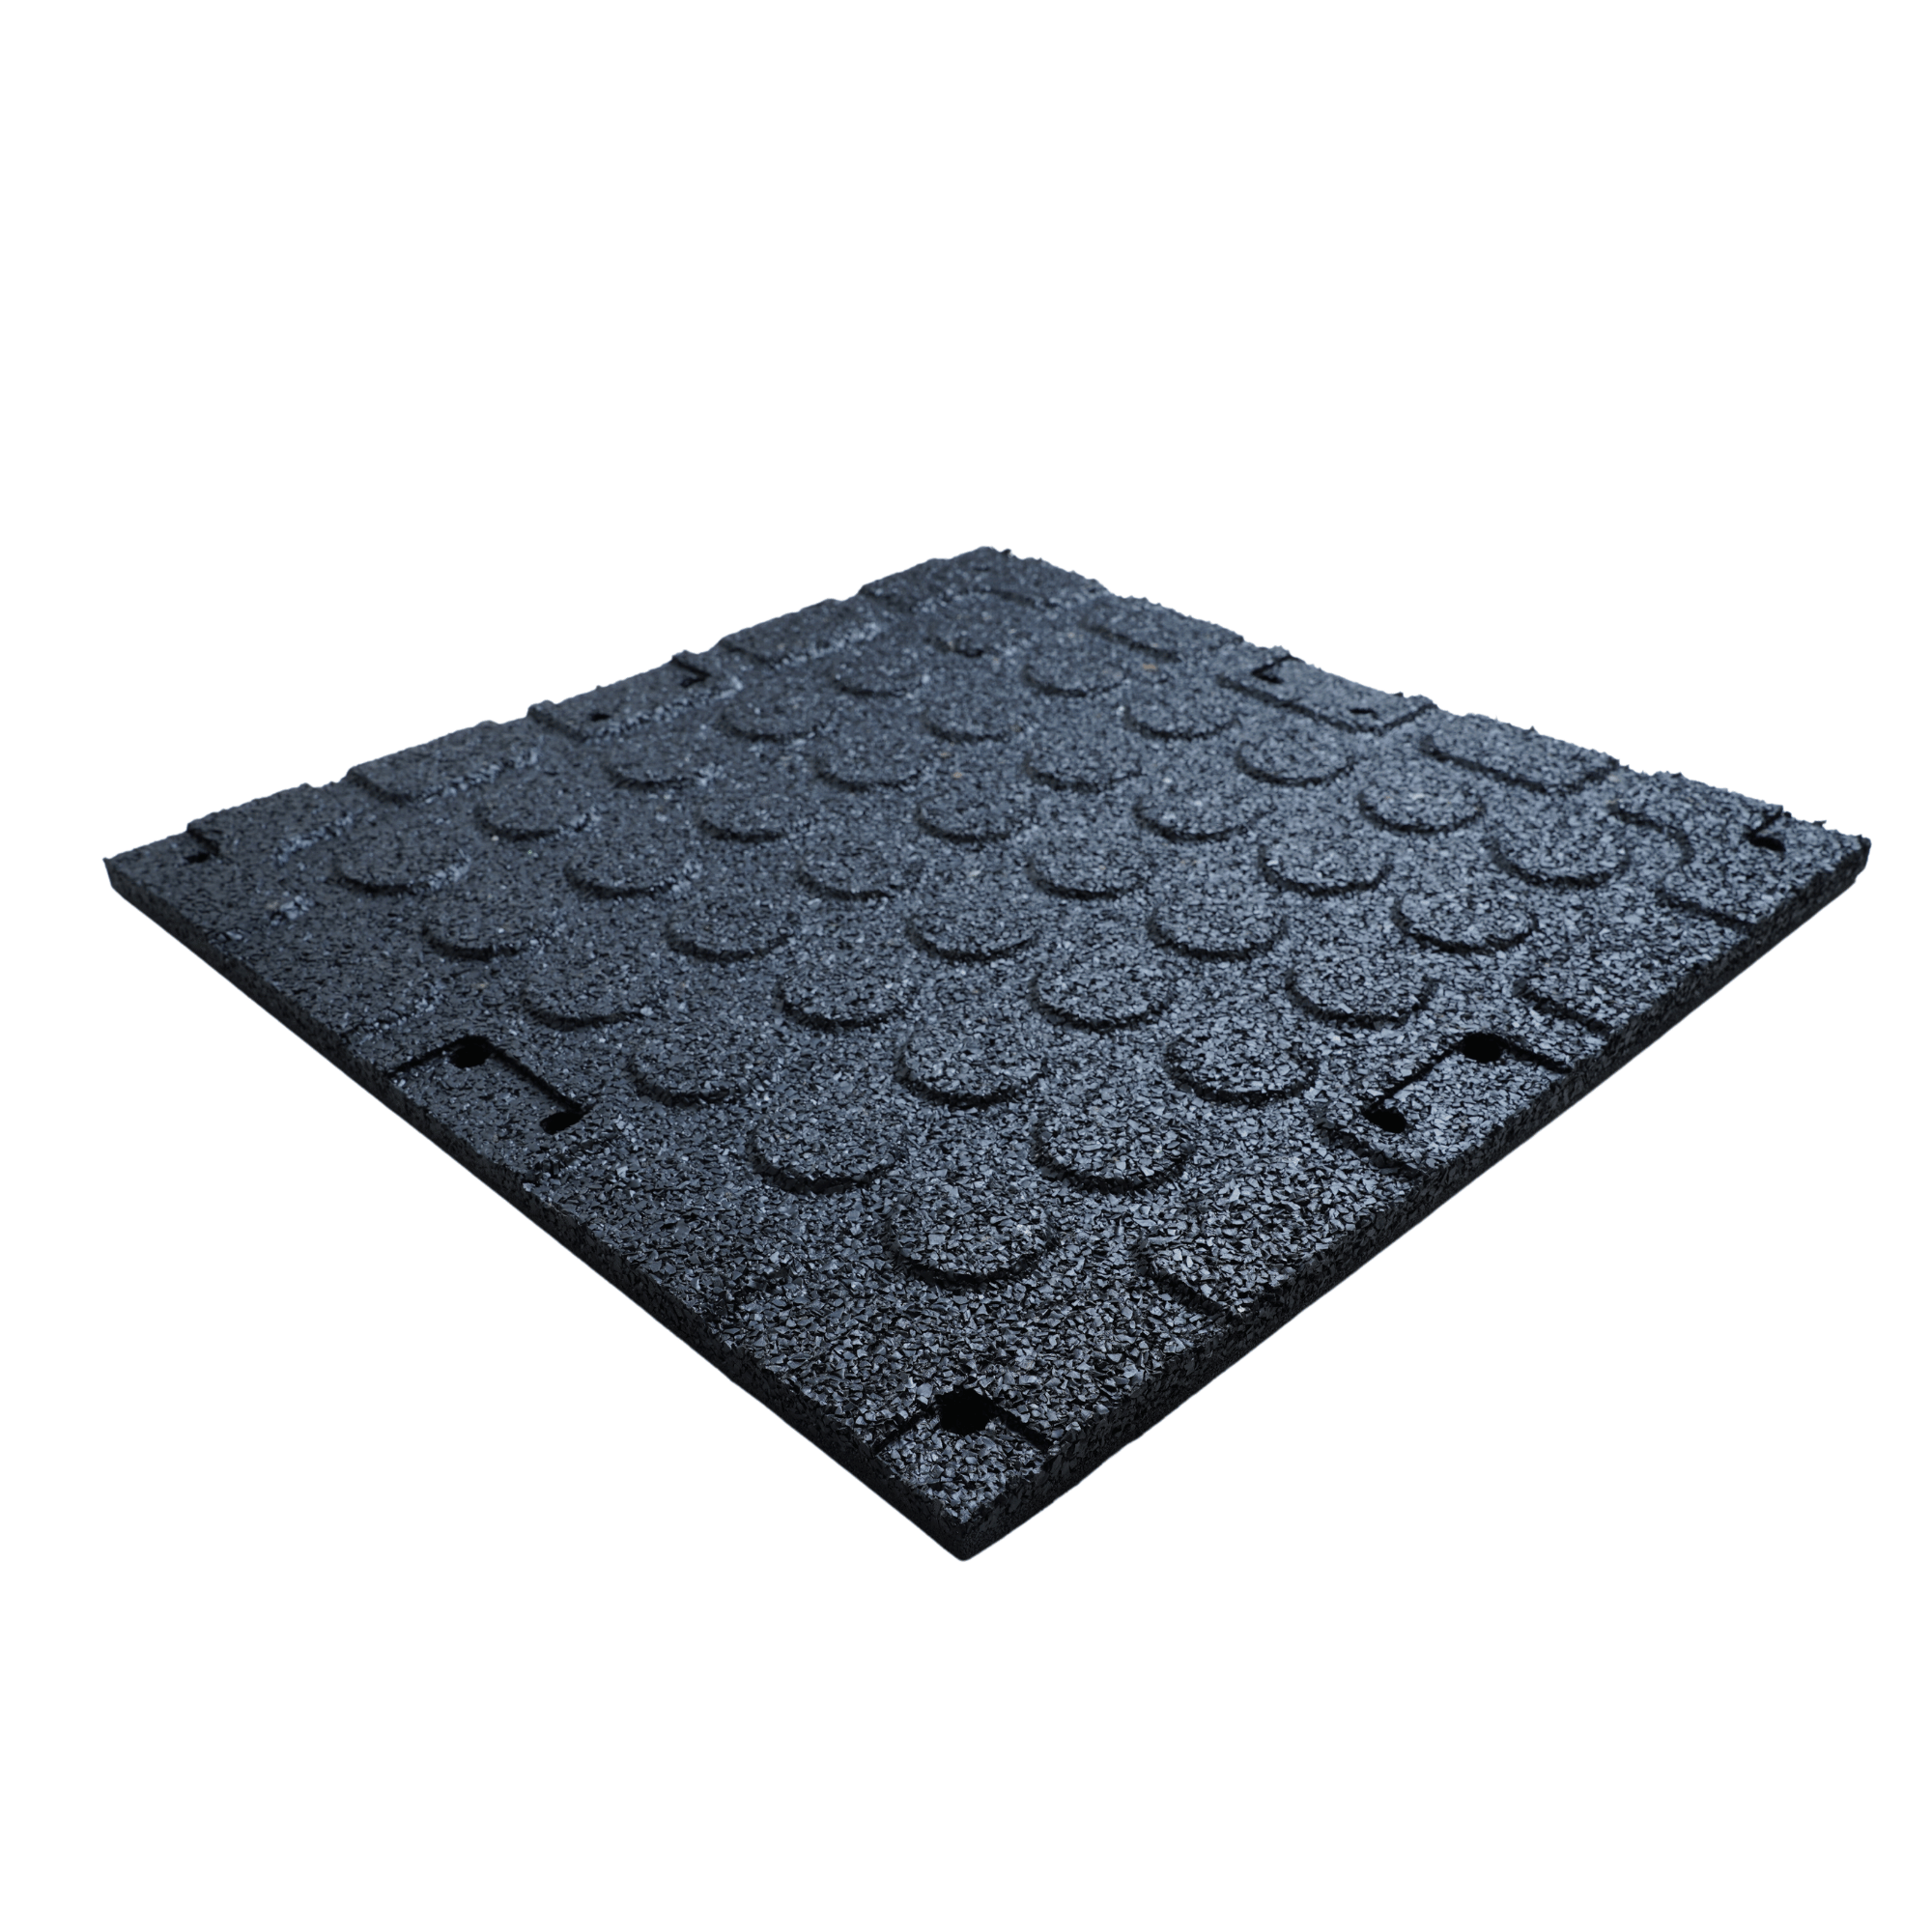 OVERDRIVE Rubber Gym Mat Flooring Black 500MM x 500MM x 20MM